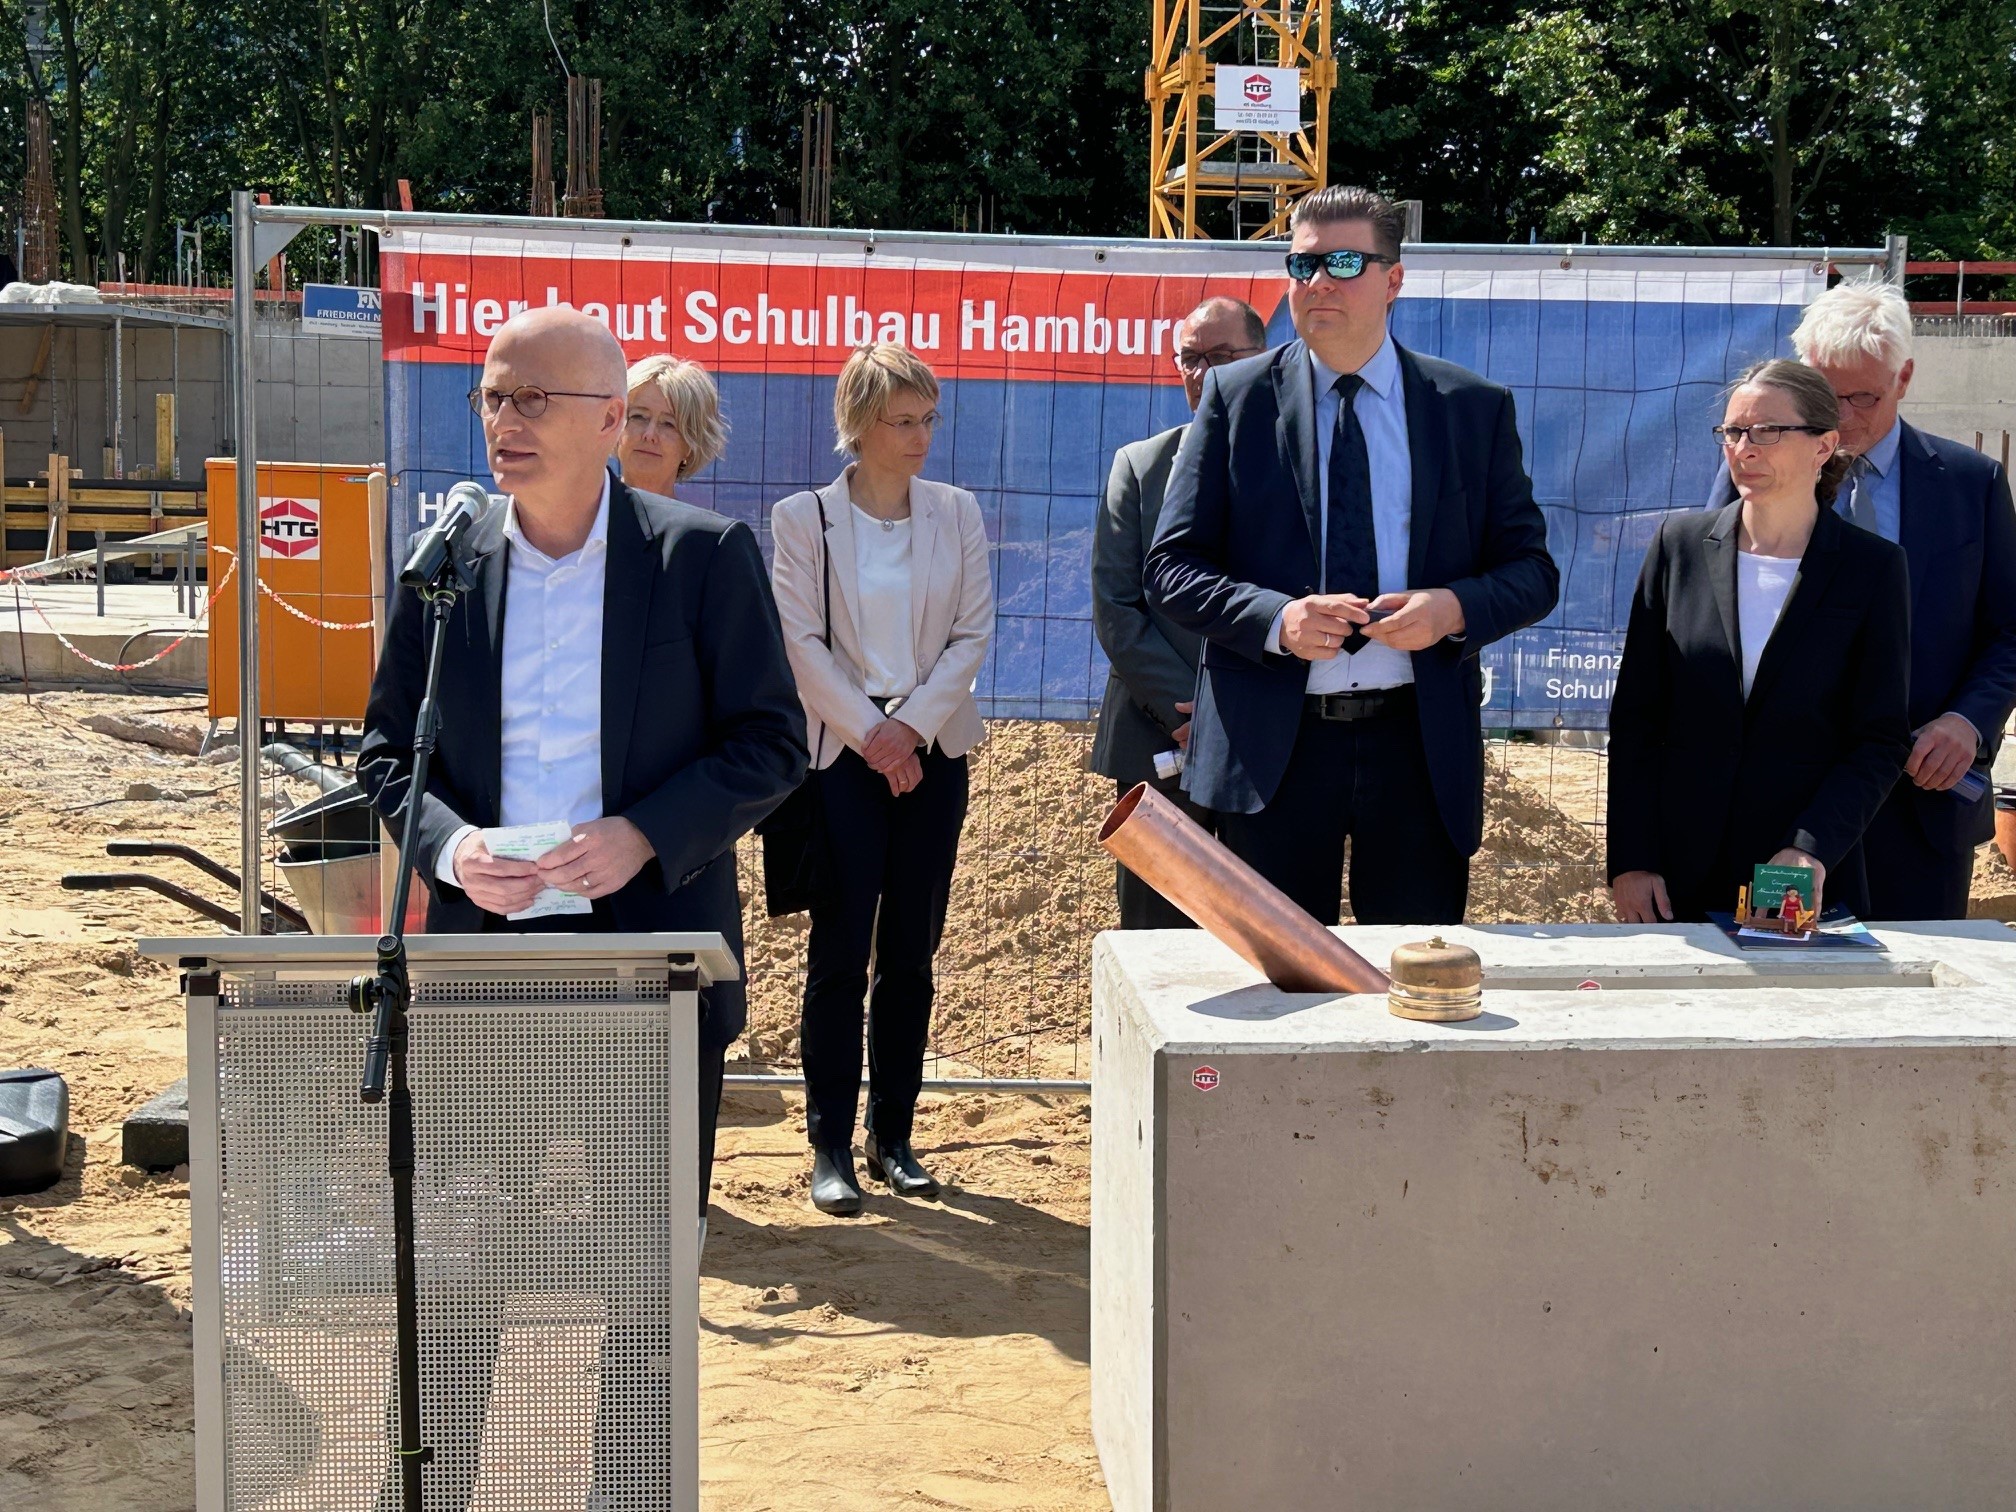 Das Bild zeigt 7 Personen, 4 Männer und 3 Frauen, die vor einer Baustelle stehen. Die linke Person spricht an einem Stehpult in ein Mikrophon.